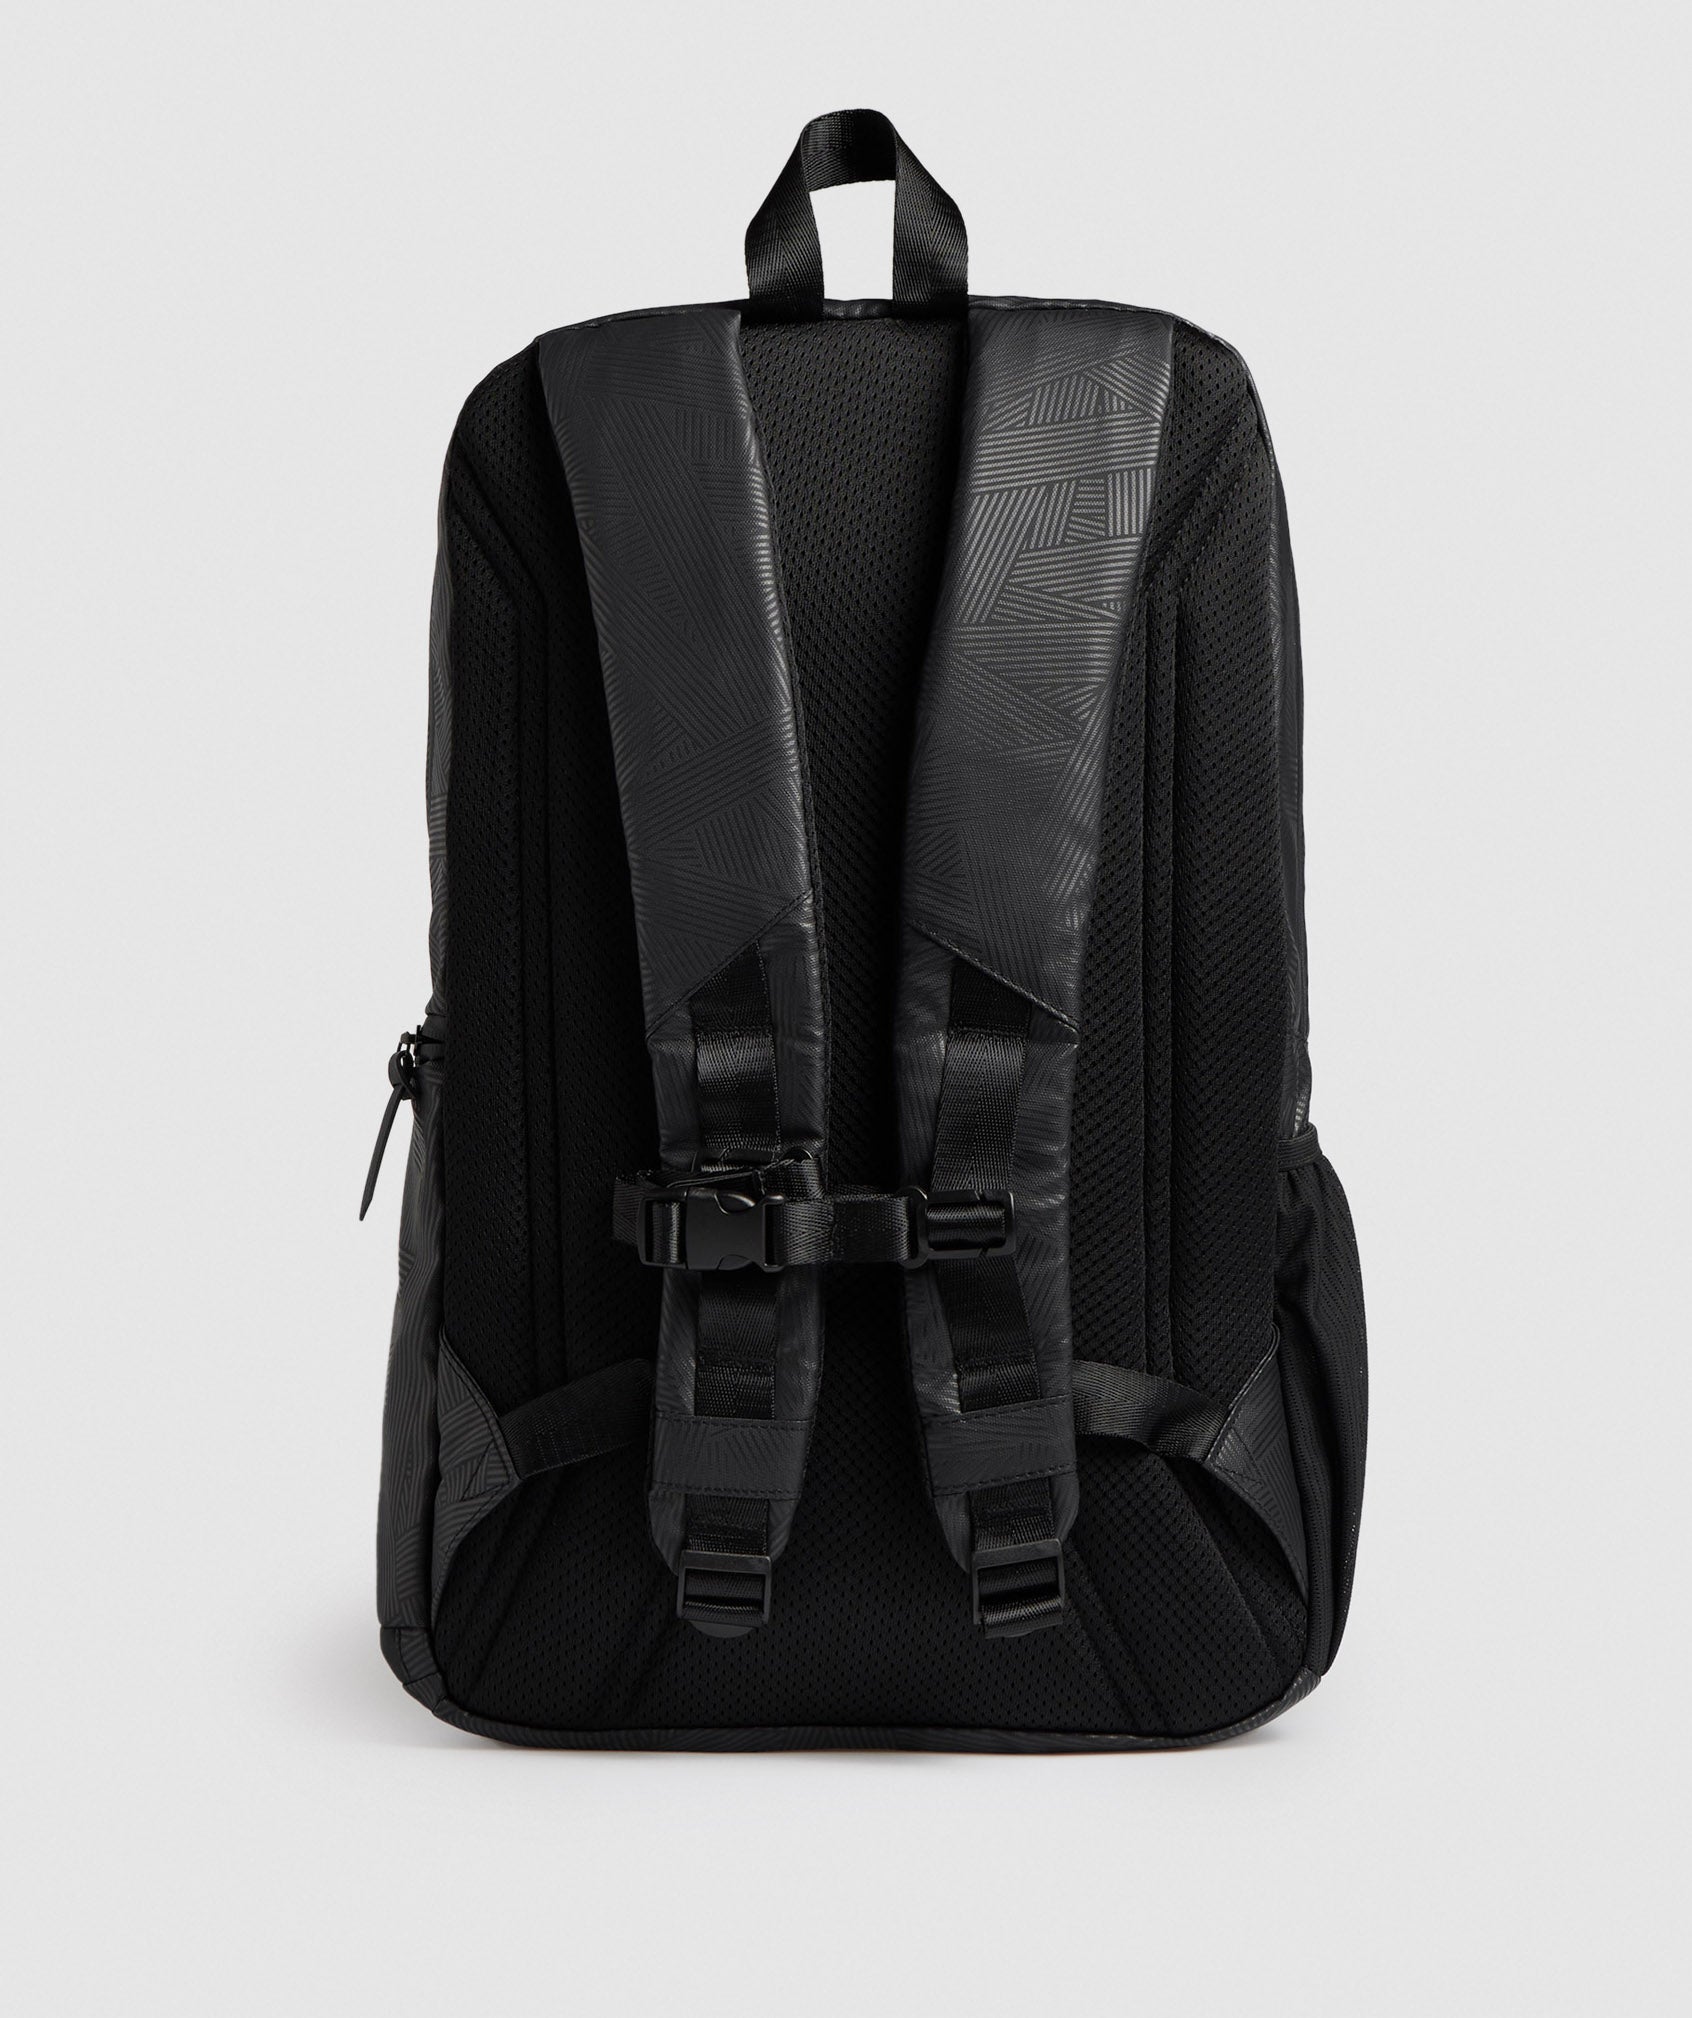 X-Series 0.1 Backpack in Black Print - view 2